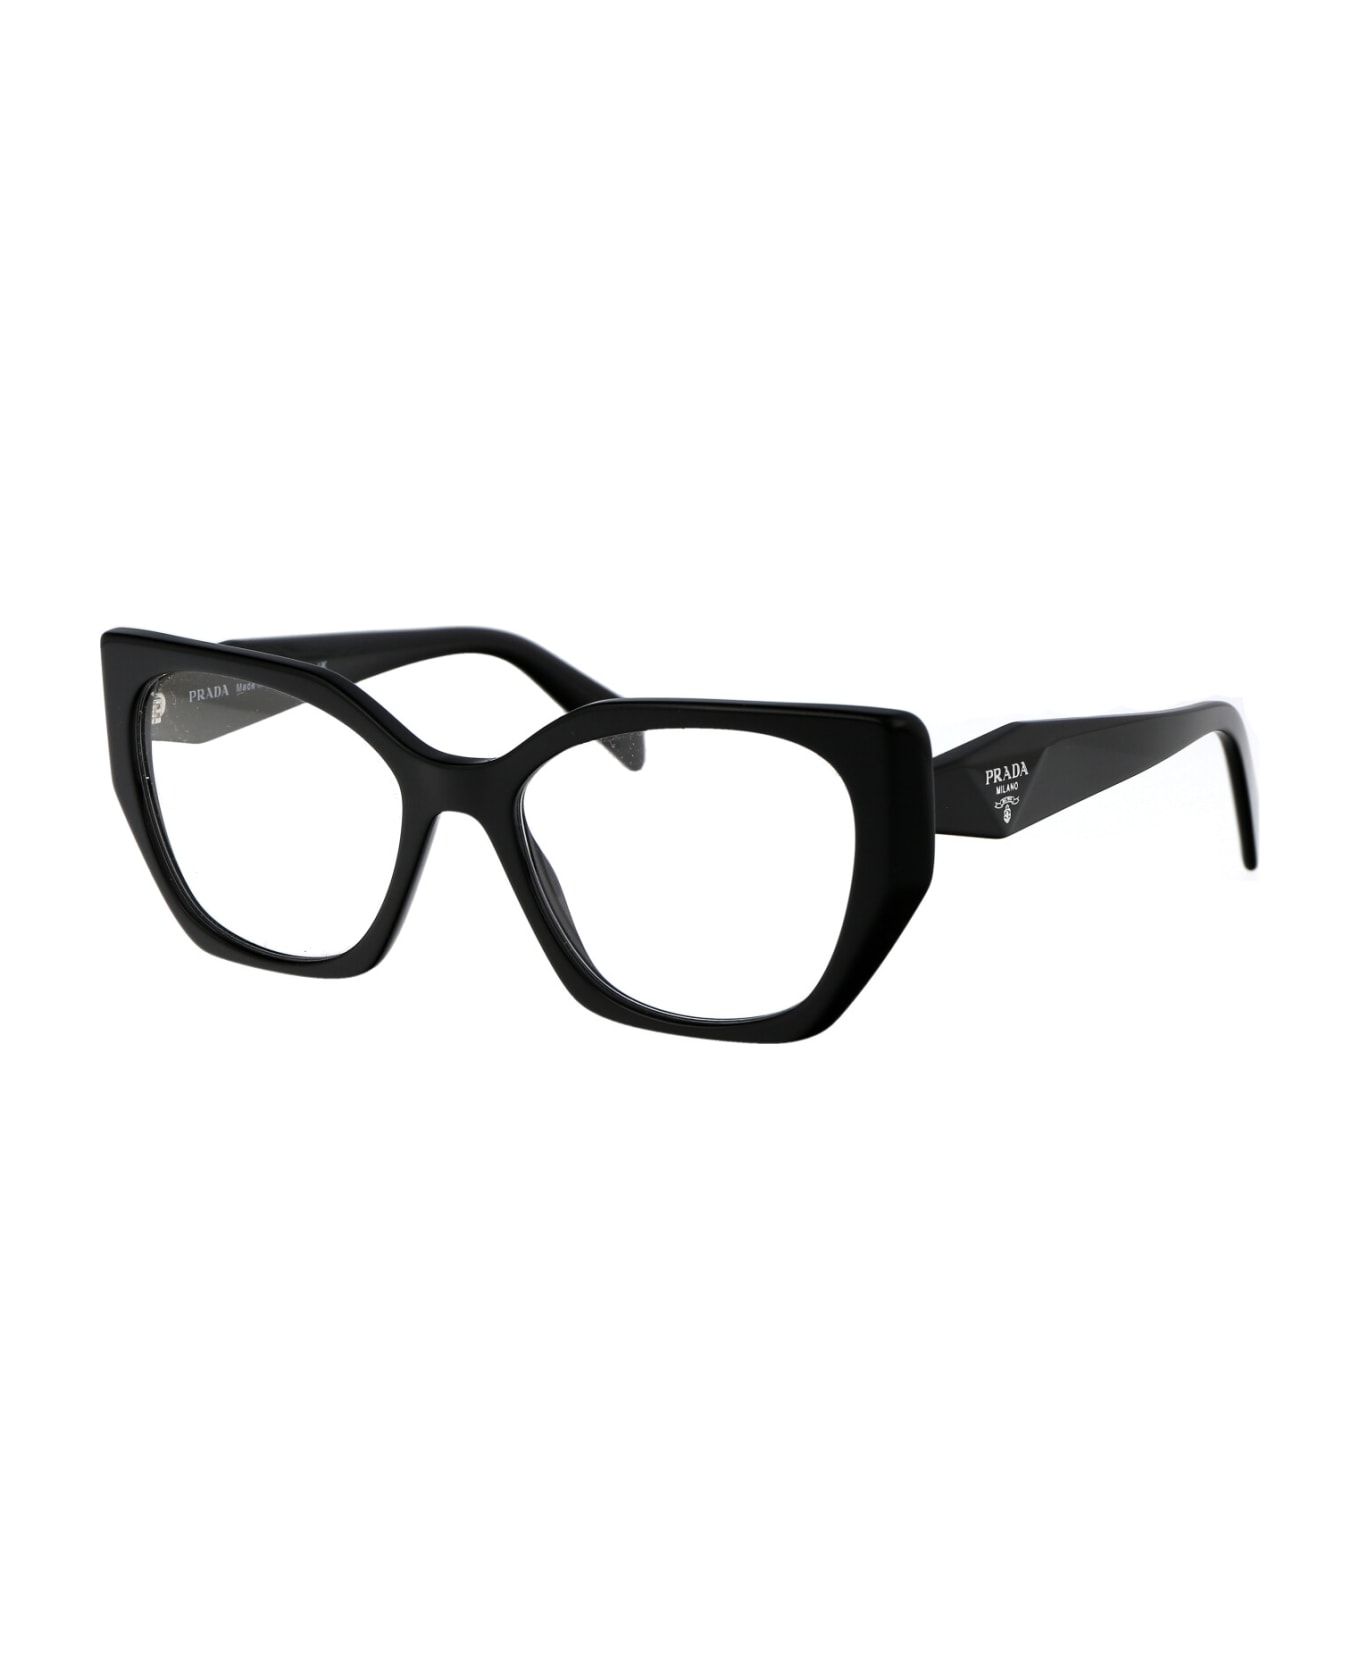 Prada Eyewear 0pr 18wv Glasses - 1AB1O1 BLACK アイウェア